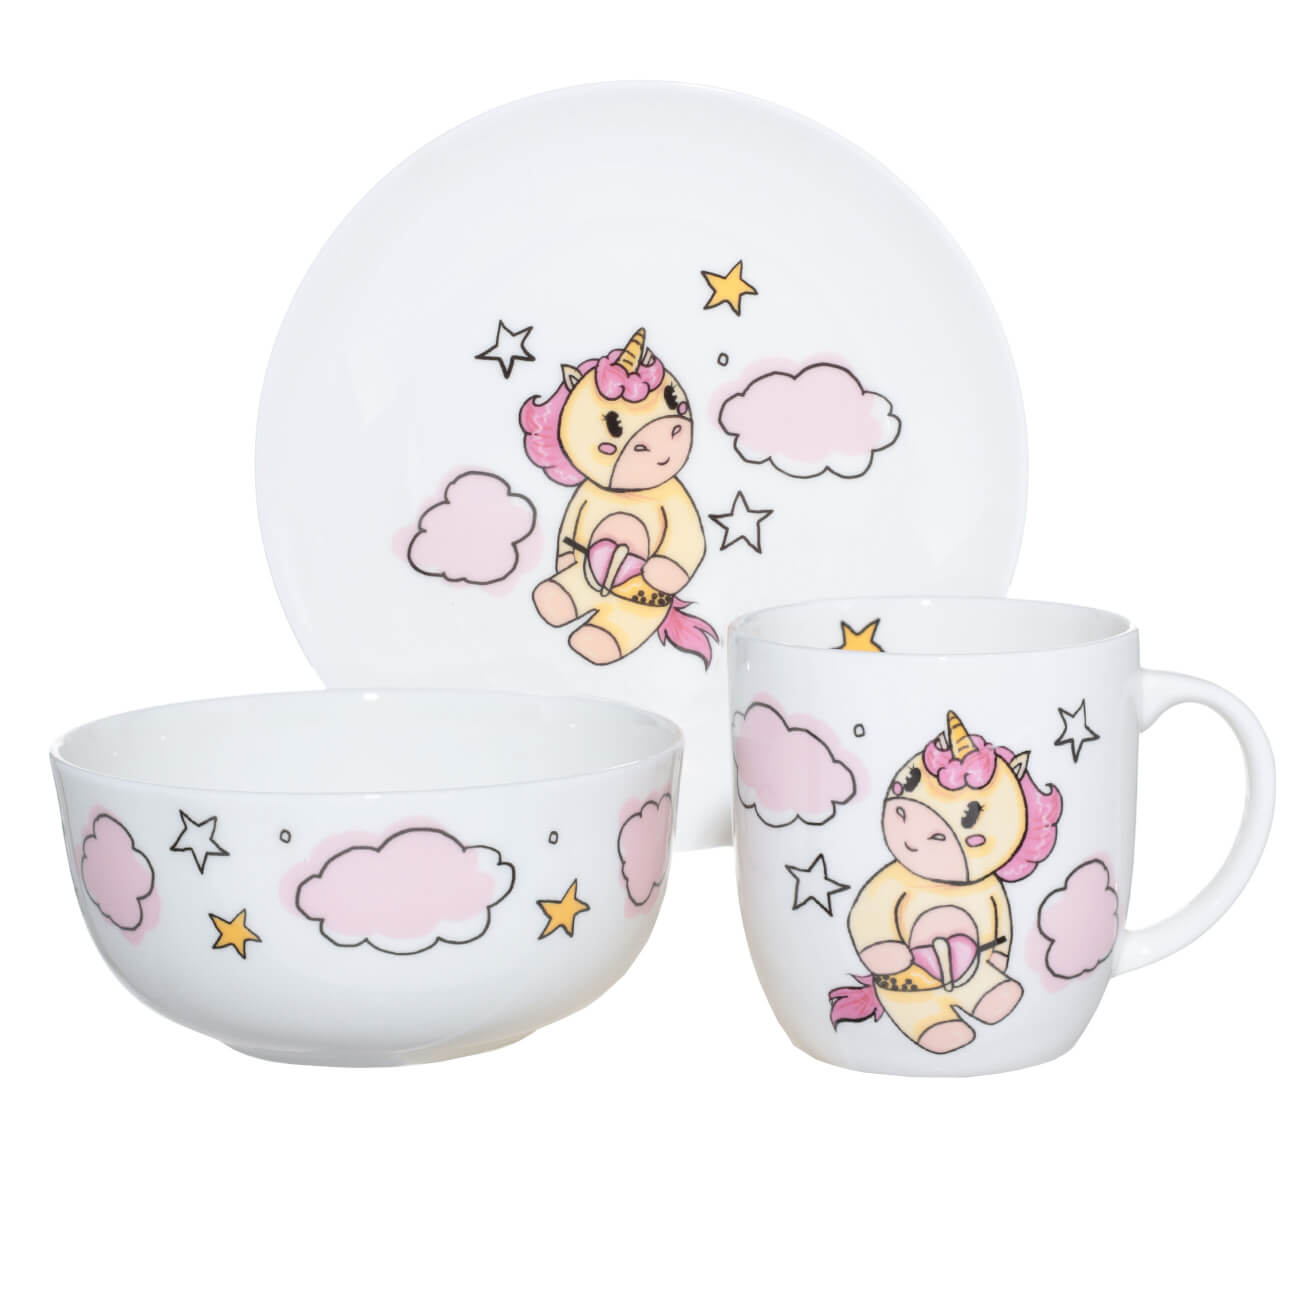 Набор посуды, детский, 3 пр, фарфор F, бело-розовый, Единорог в облаках, Unicorn набор для душа 3 пр детский в косметичке полиэстер сиреневый единорог unicorn